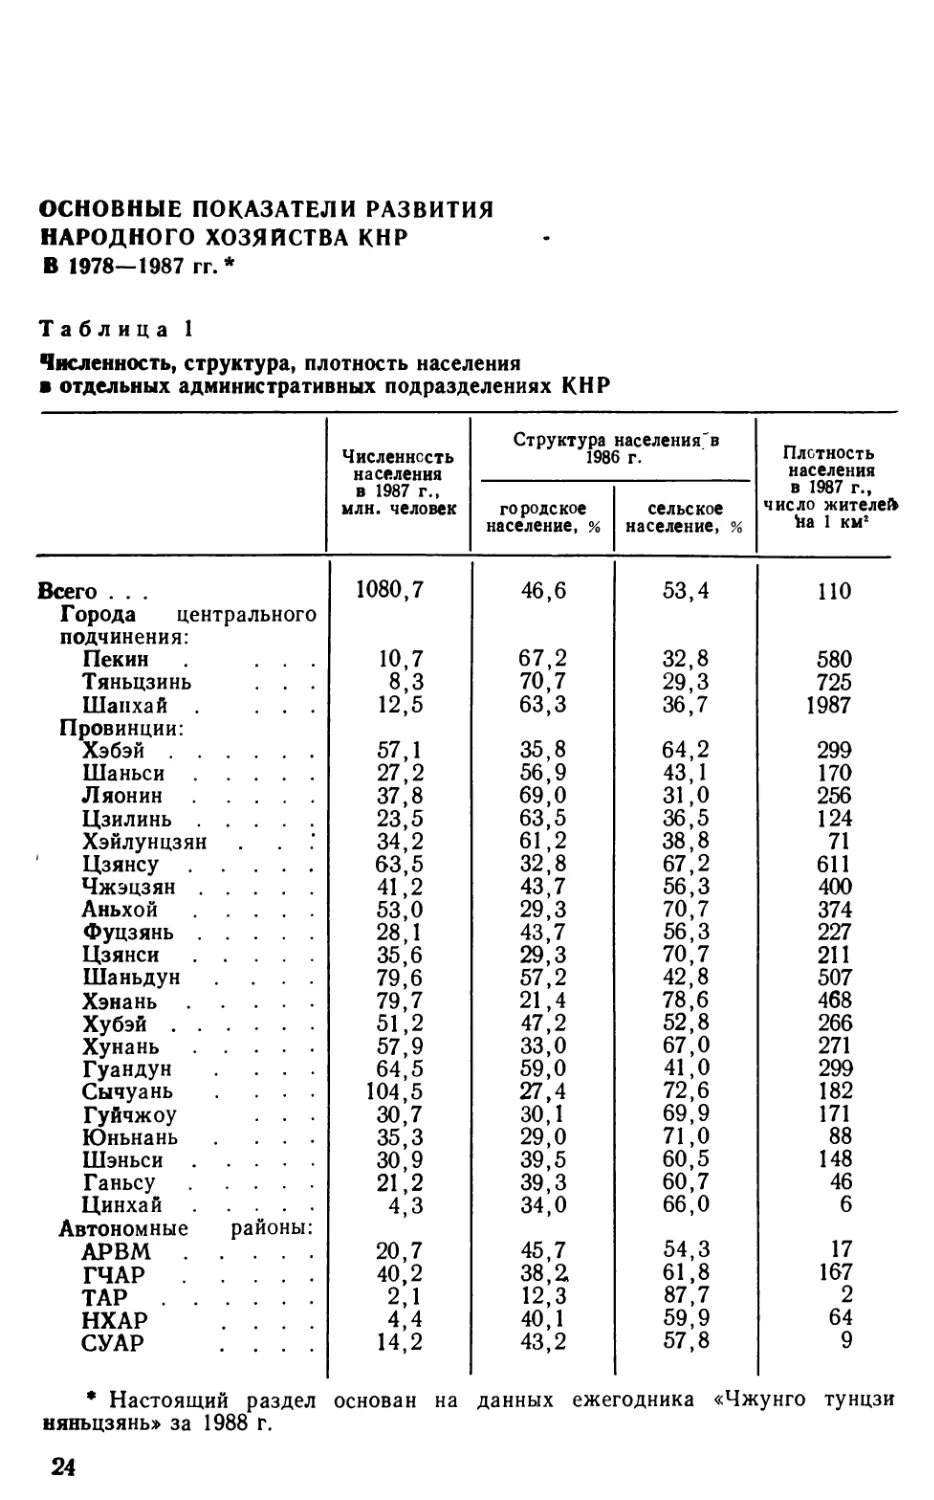 Основные показатели развития народного хозяйства КНР в 1978— 1987 гг